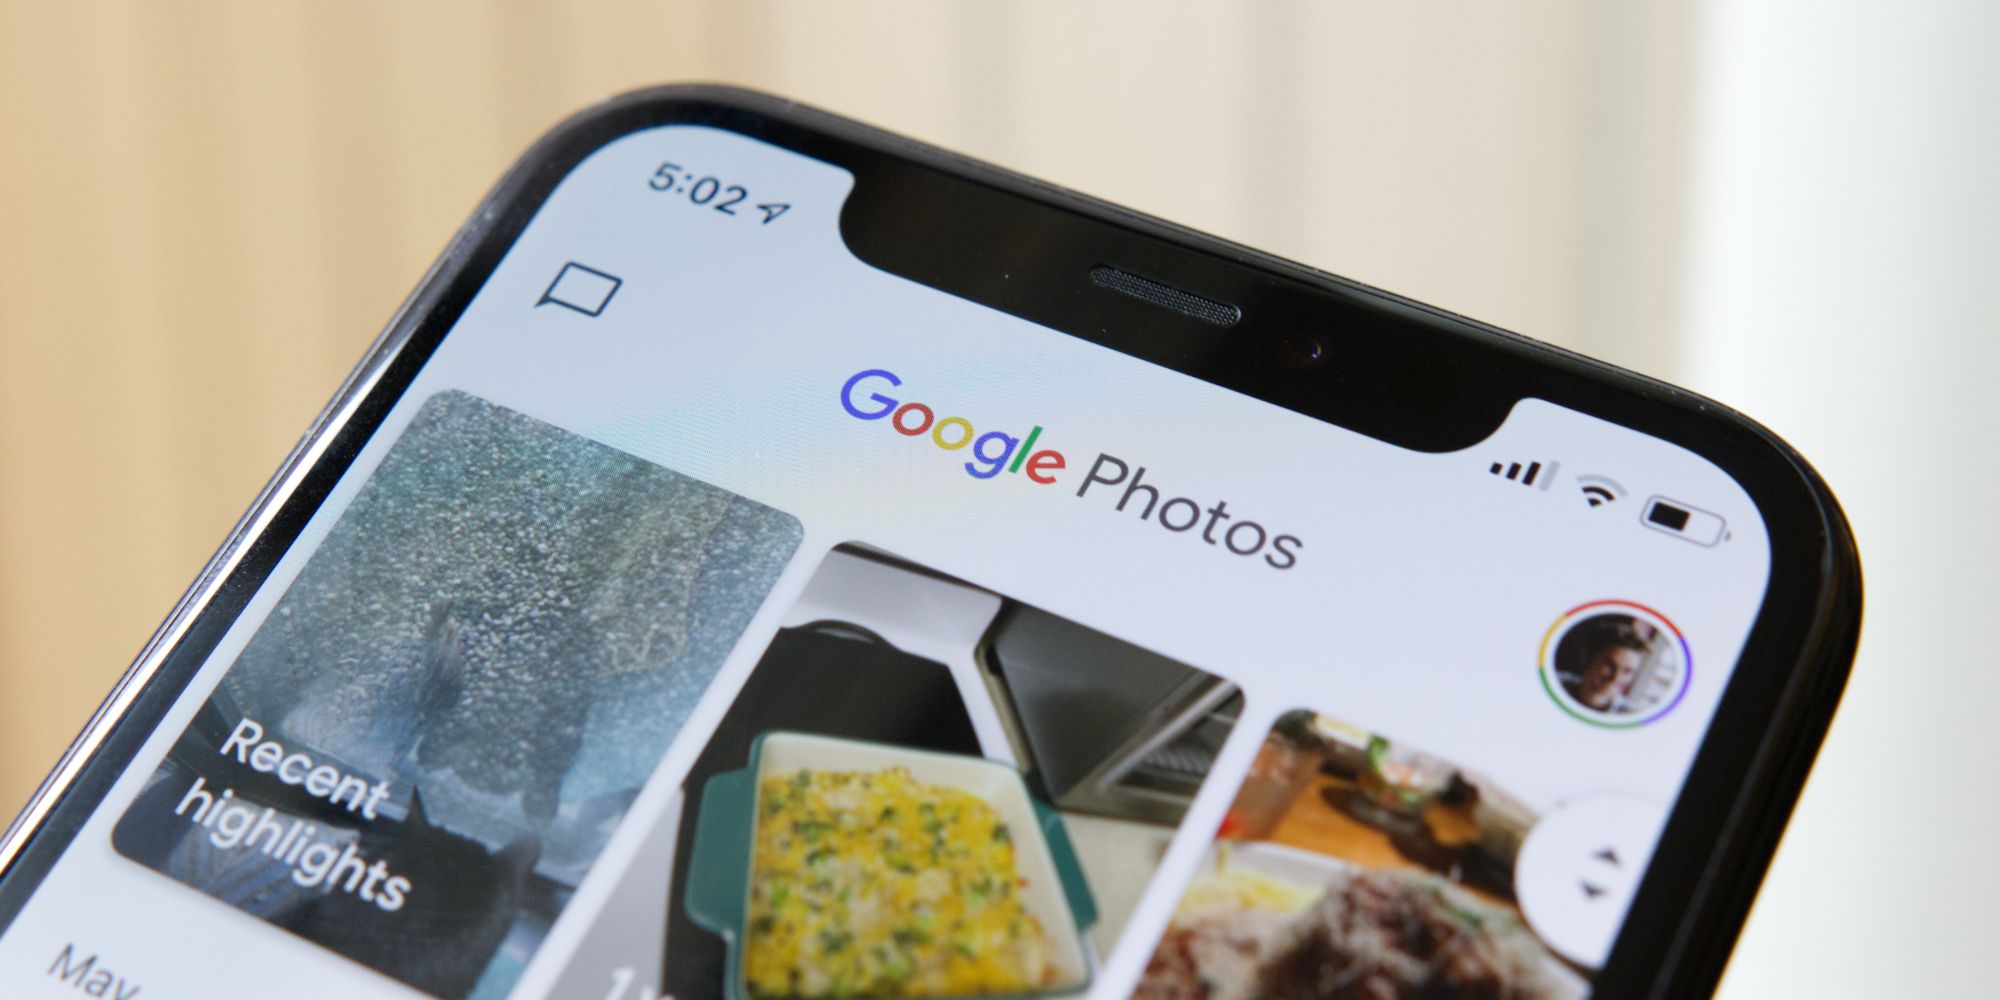 Google Photos app on an iPhone